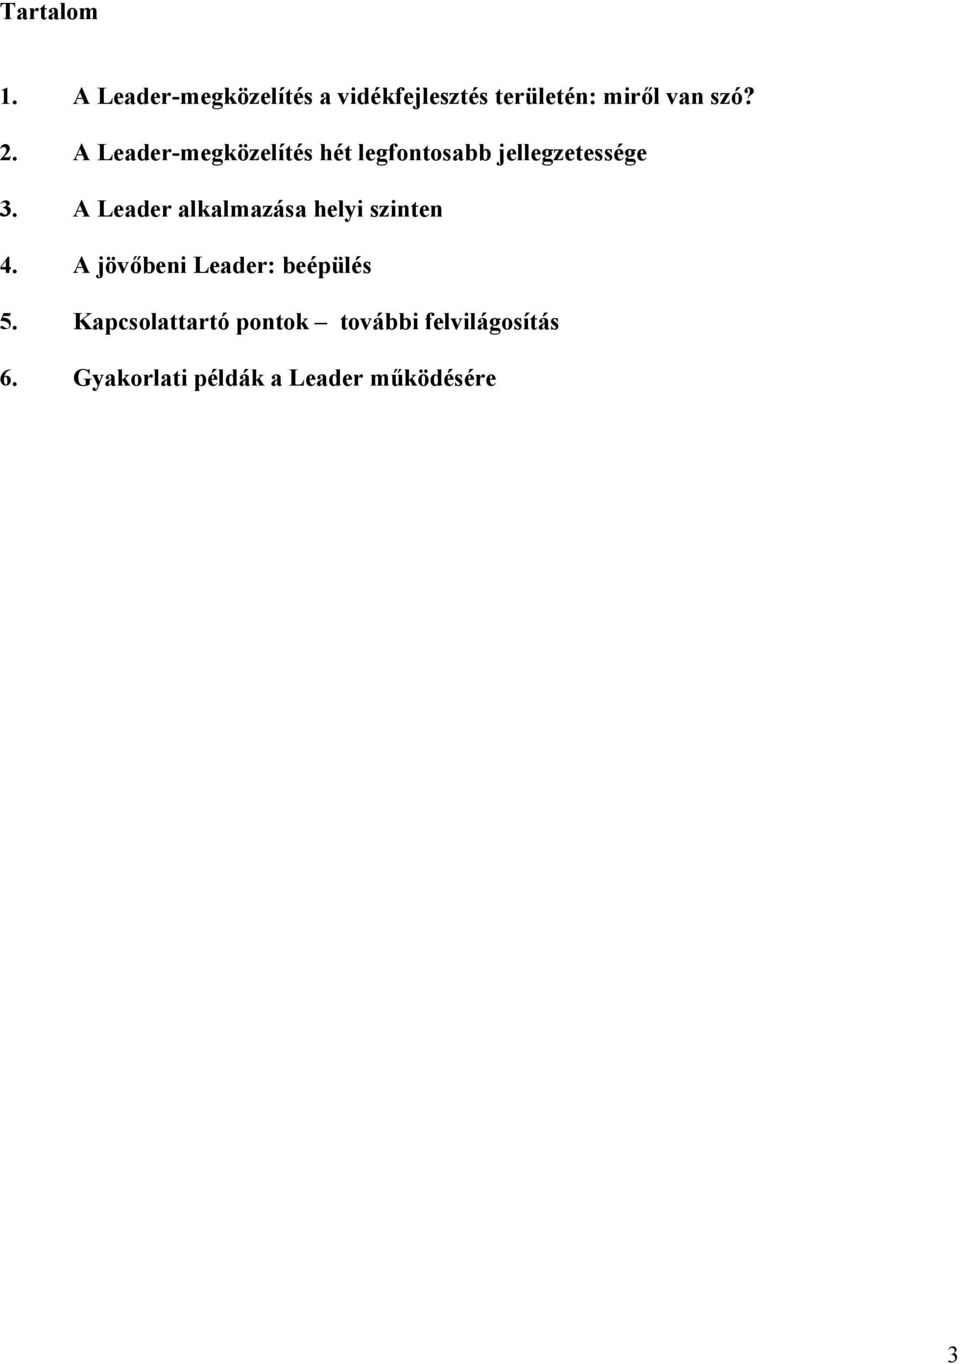 A Leader-megközelítés hét legfontosabb jellegzetessége 3.